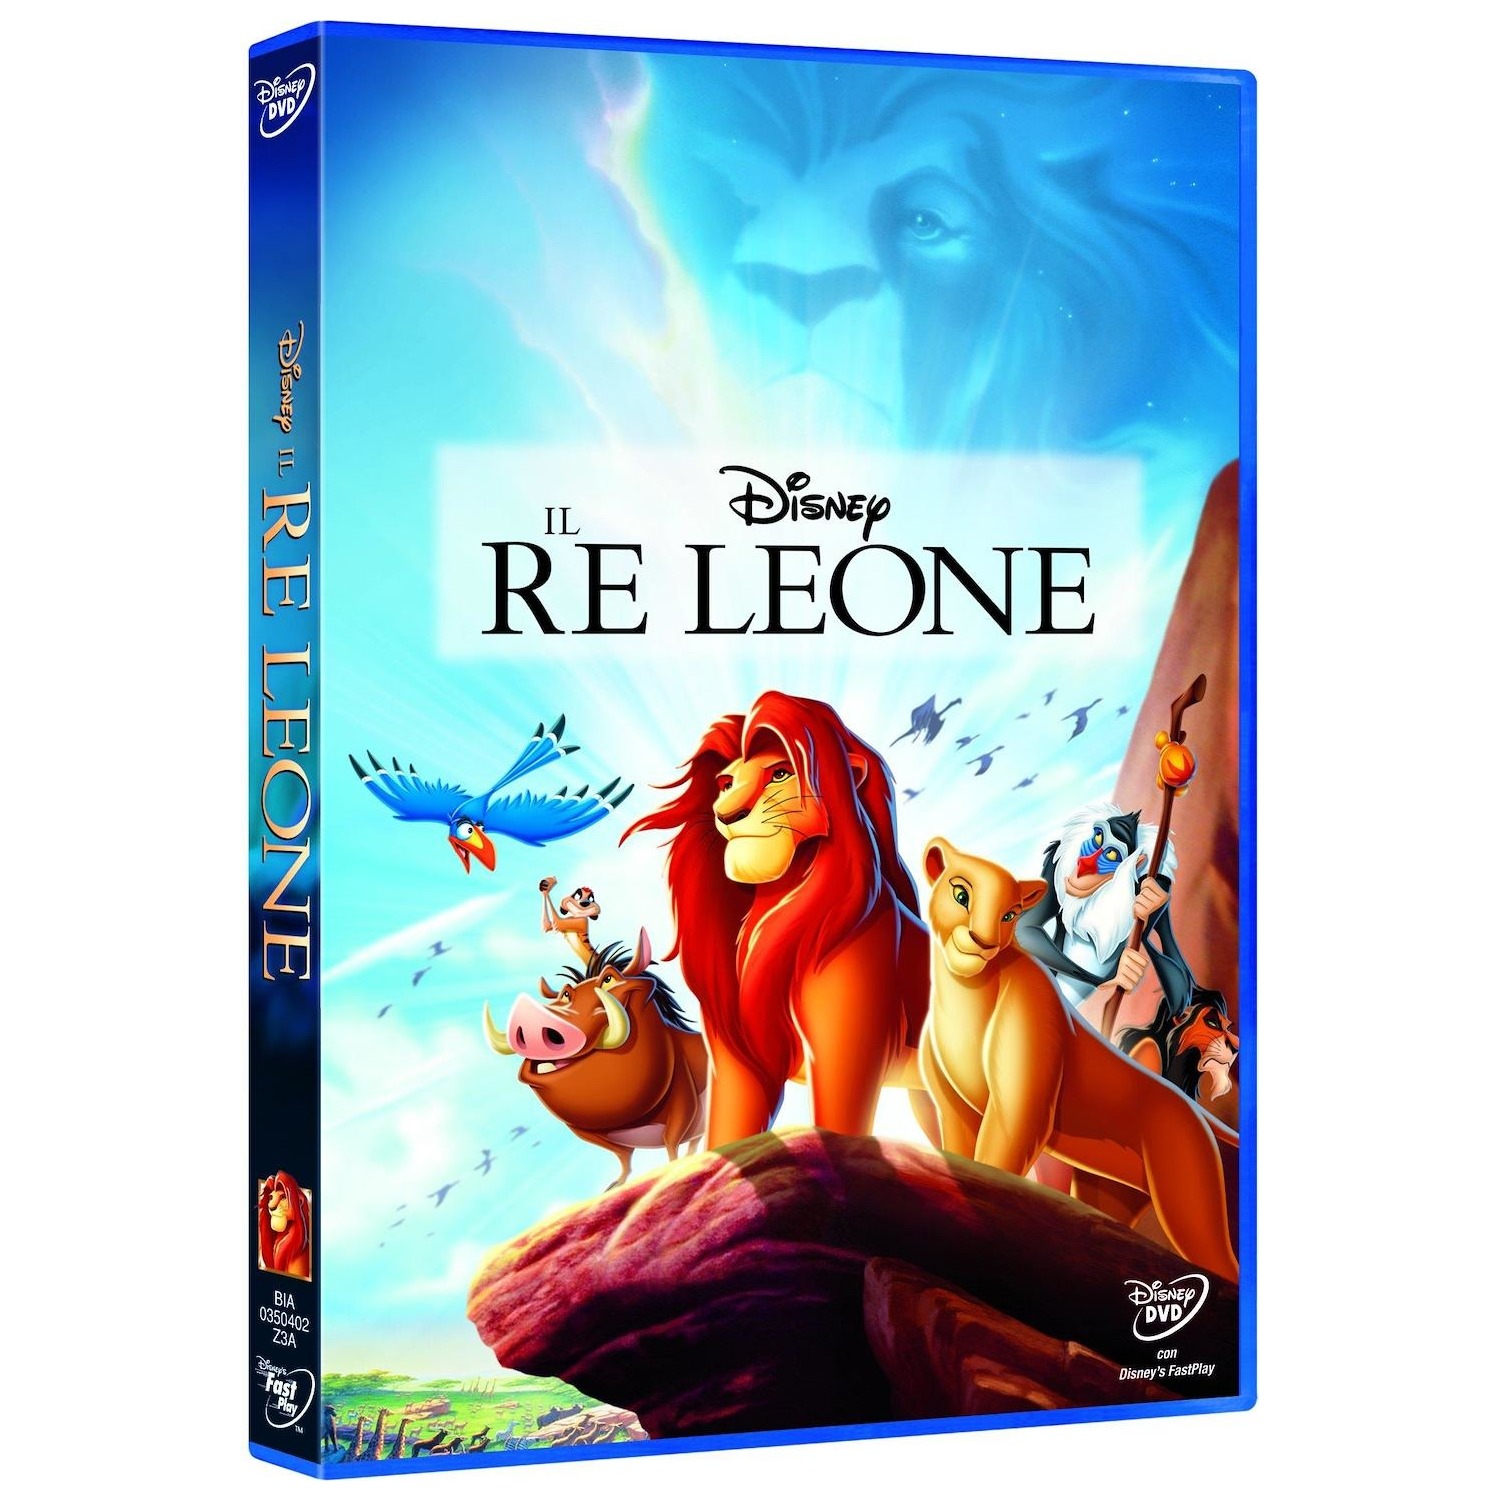 Immagine per DVD Il Re leone da DIMOStore